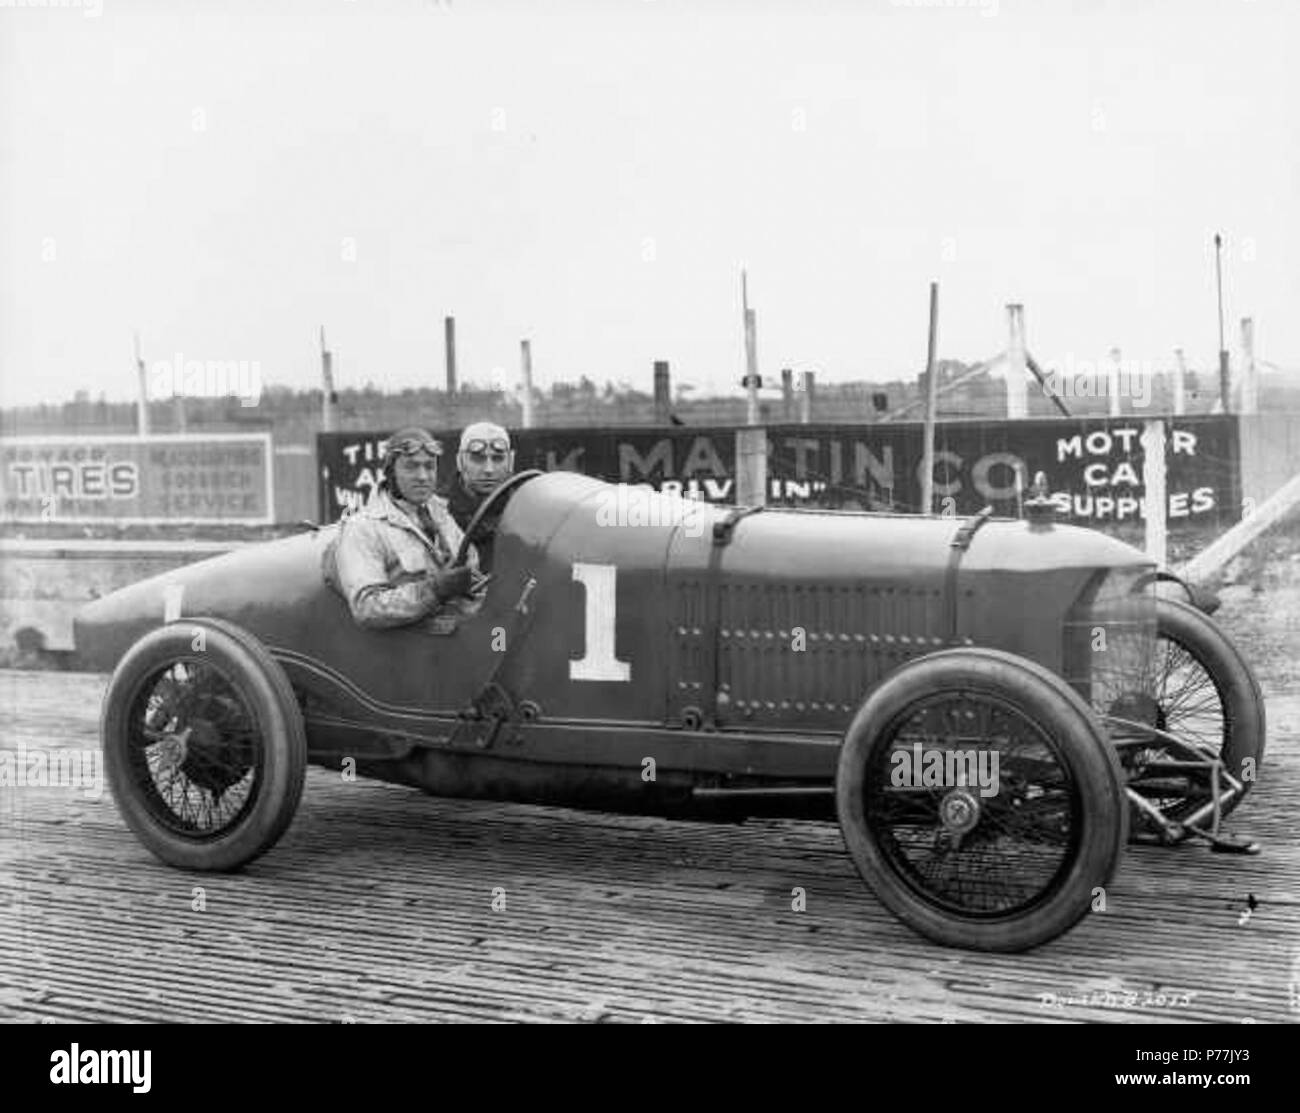 Inglés: Dario resta es fotografiado en julio de 1919, en el Tacoma Speedway en su Resta especial. También en el vehículo es su mecánico R. Dahnke. Resta estaba haciendo su primera aparición en la pista de Tacoma y él era un comodín desconocido. En los ensayos para la carrera del 4 de julio, apareció a celebrar su coche de vuelta, sólo ir lo suficientemente rápido para calificar. Sin embargo, resultó que el motor más pequeño en su vehículo no podría competir con los cuatro grandes coches. Terminó el último en la milla 40 y 60 millas de las razas y se retiró de las 80 millas de carrera con problemas de motor. Resta nació en Milán, Italia, en 1884. H Foto de stock